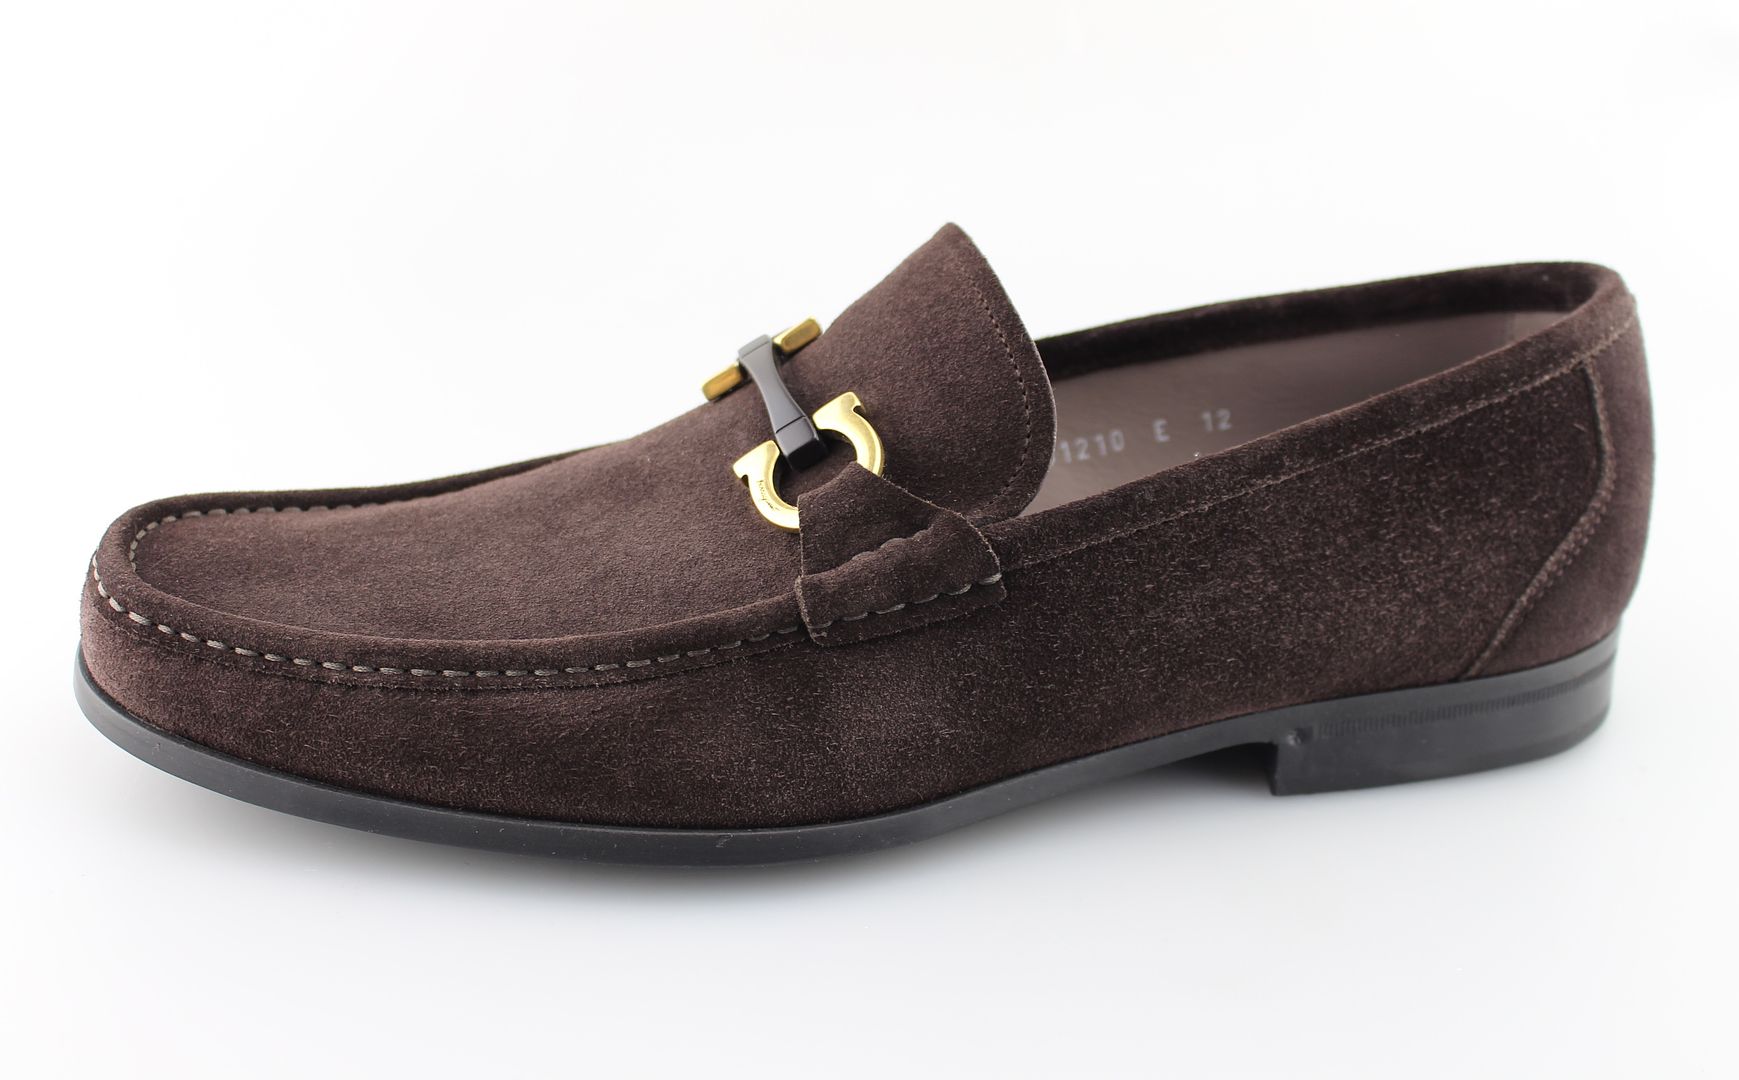 Men's SALVATORE FERRAGAMO 'Grandioso' Brown Suede Loafers Size US 12